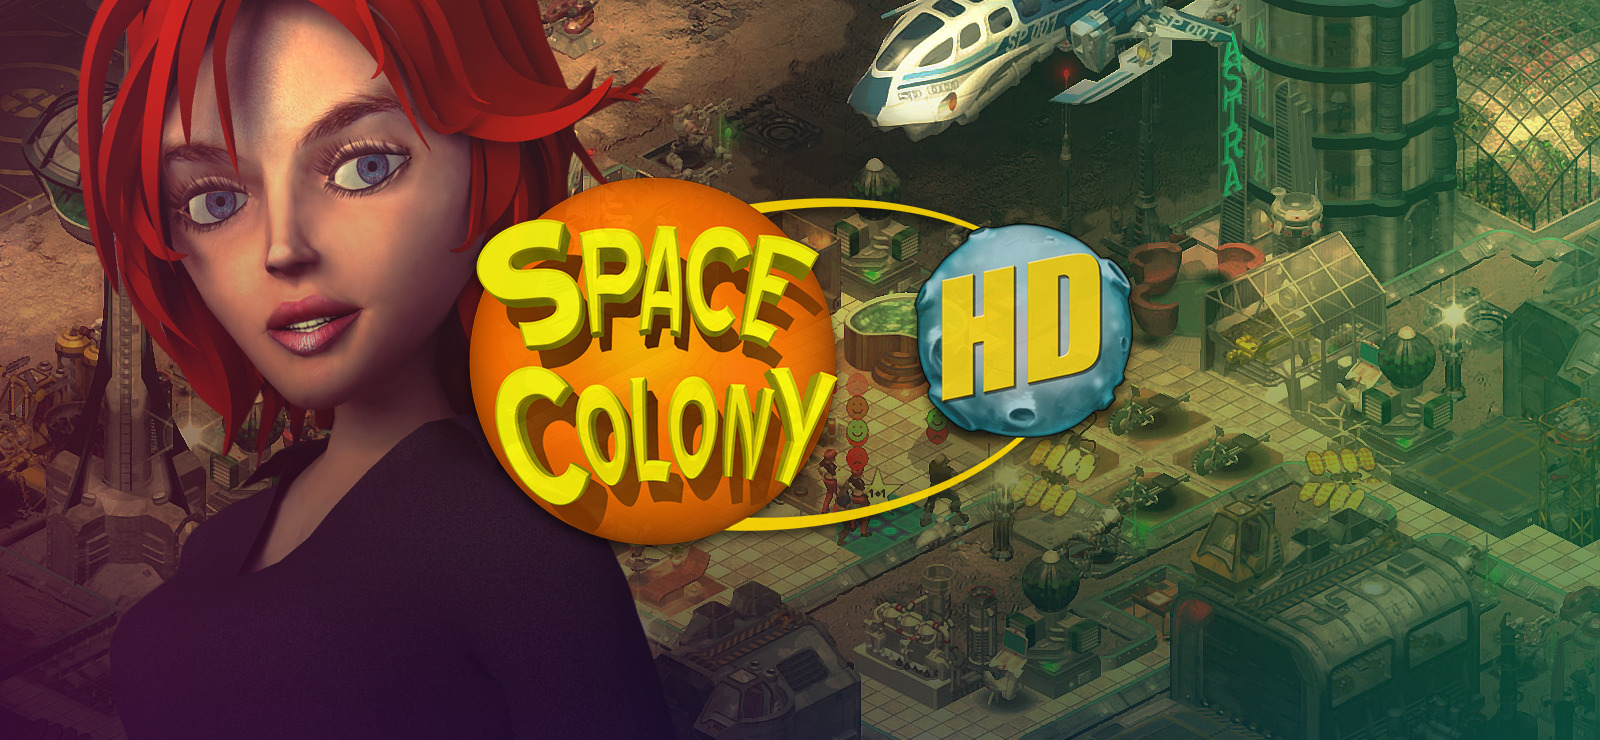 Resultado de imagen de space colony hd